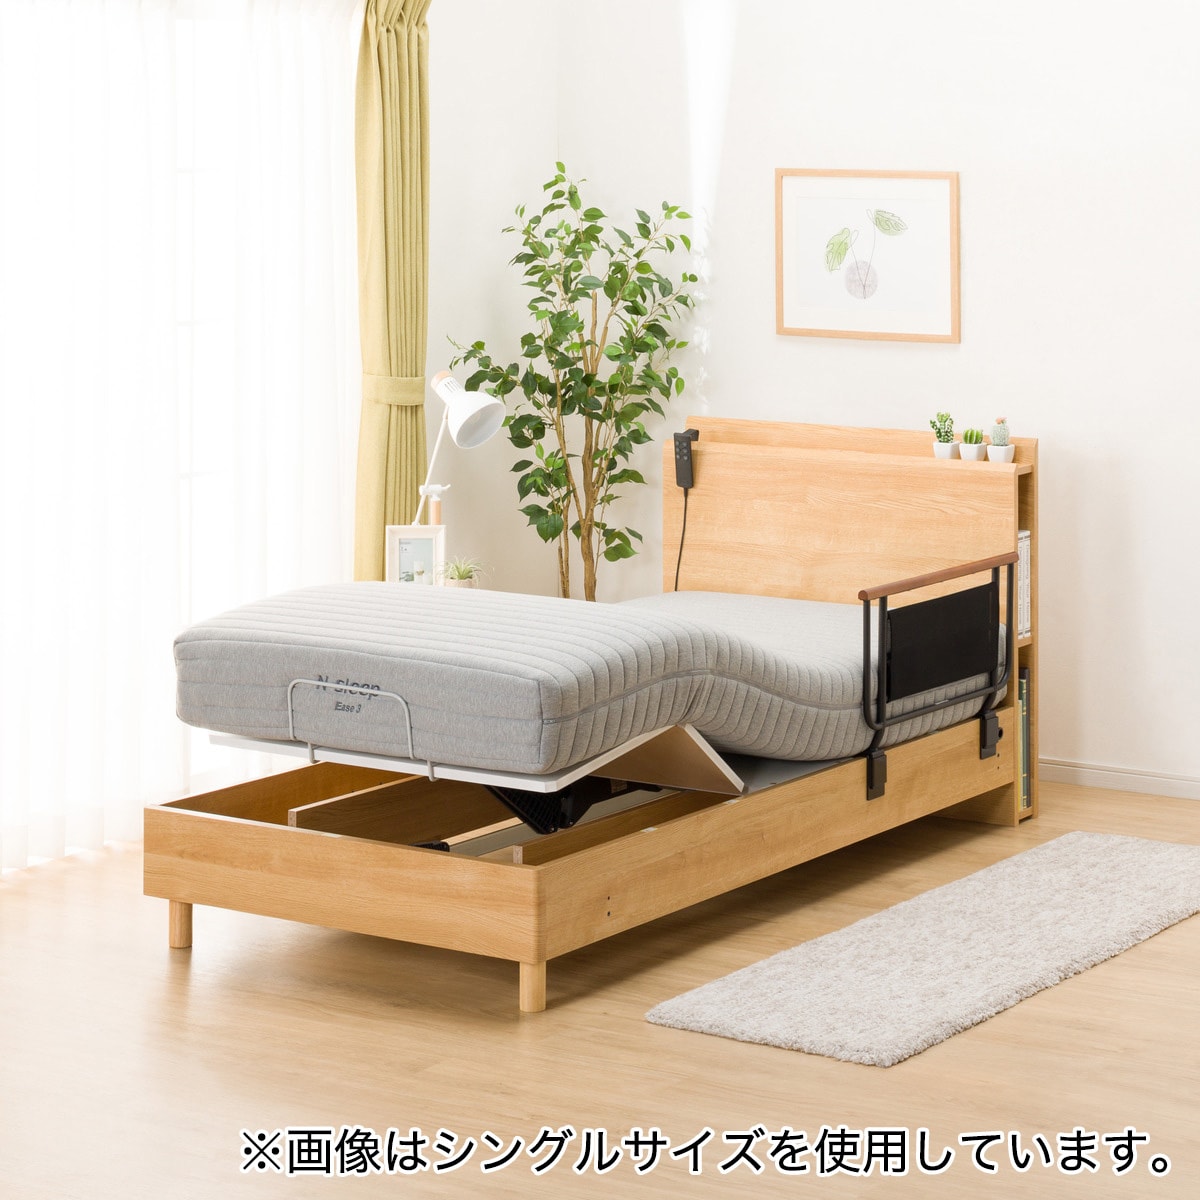 ニトリ デュアルポケット2 セミダブル マットレス - 寝具